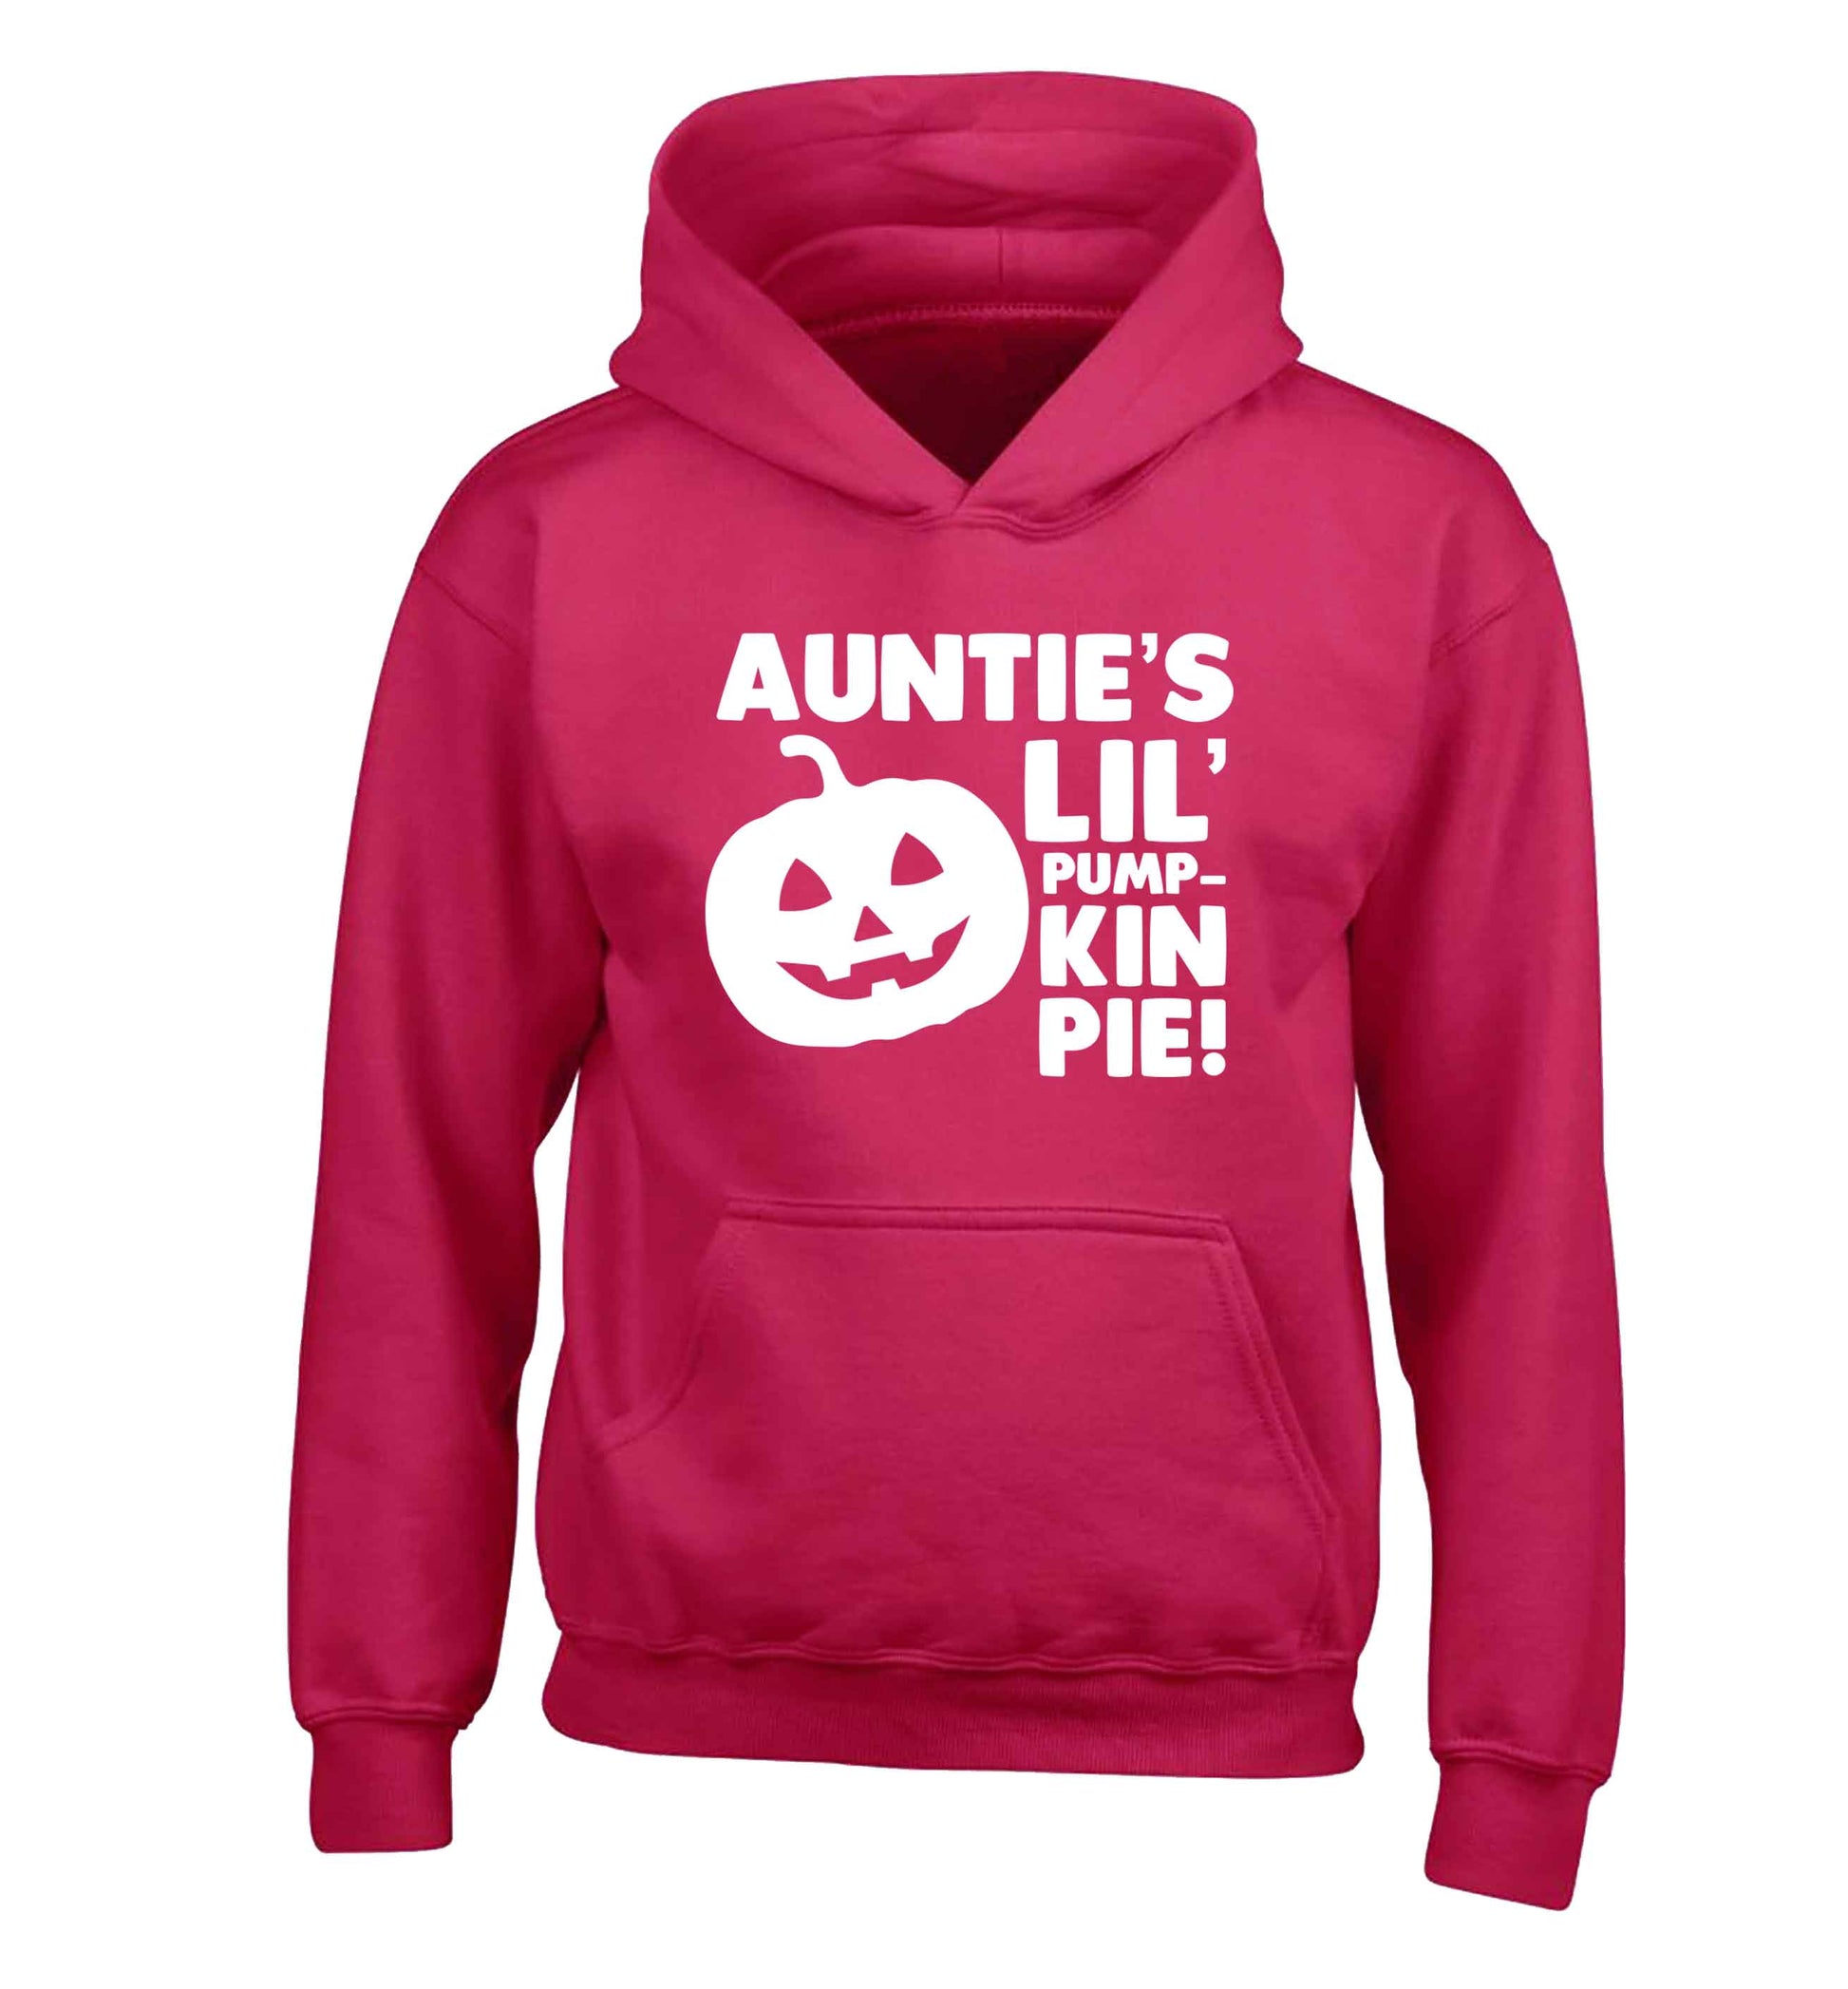 Auntie's lil' pumpkin pie children's pink hoodie 12-13 Years